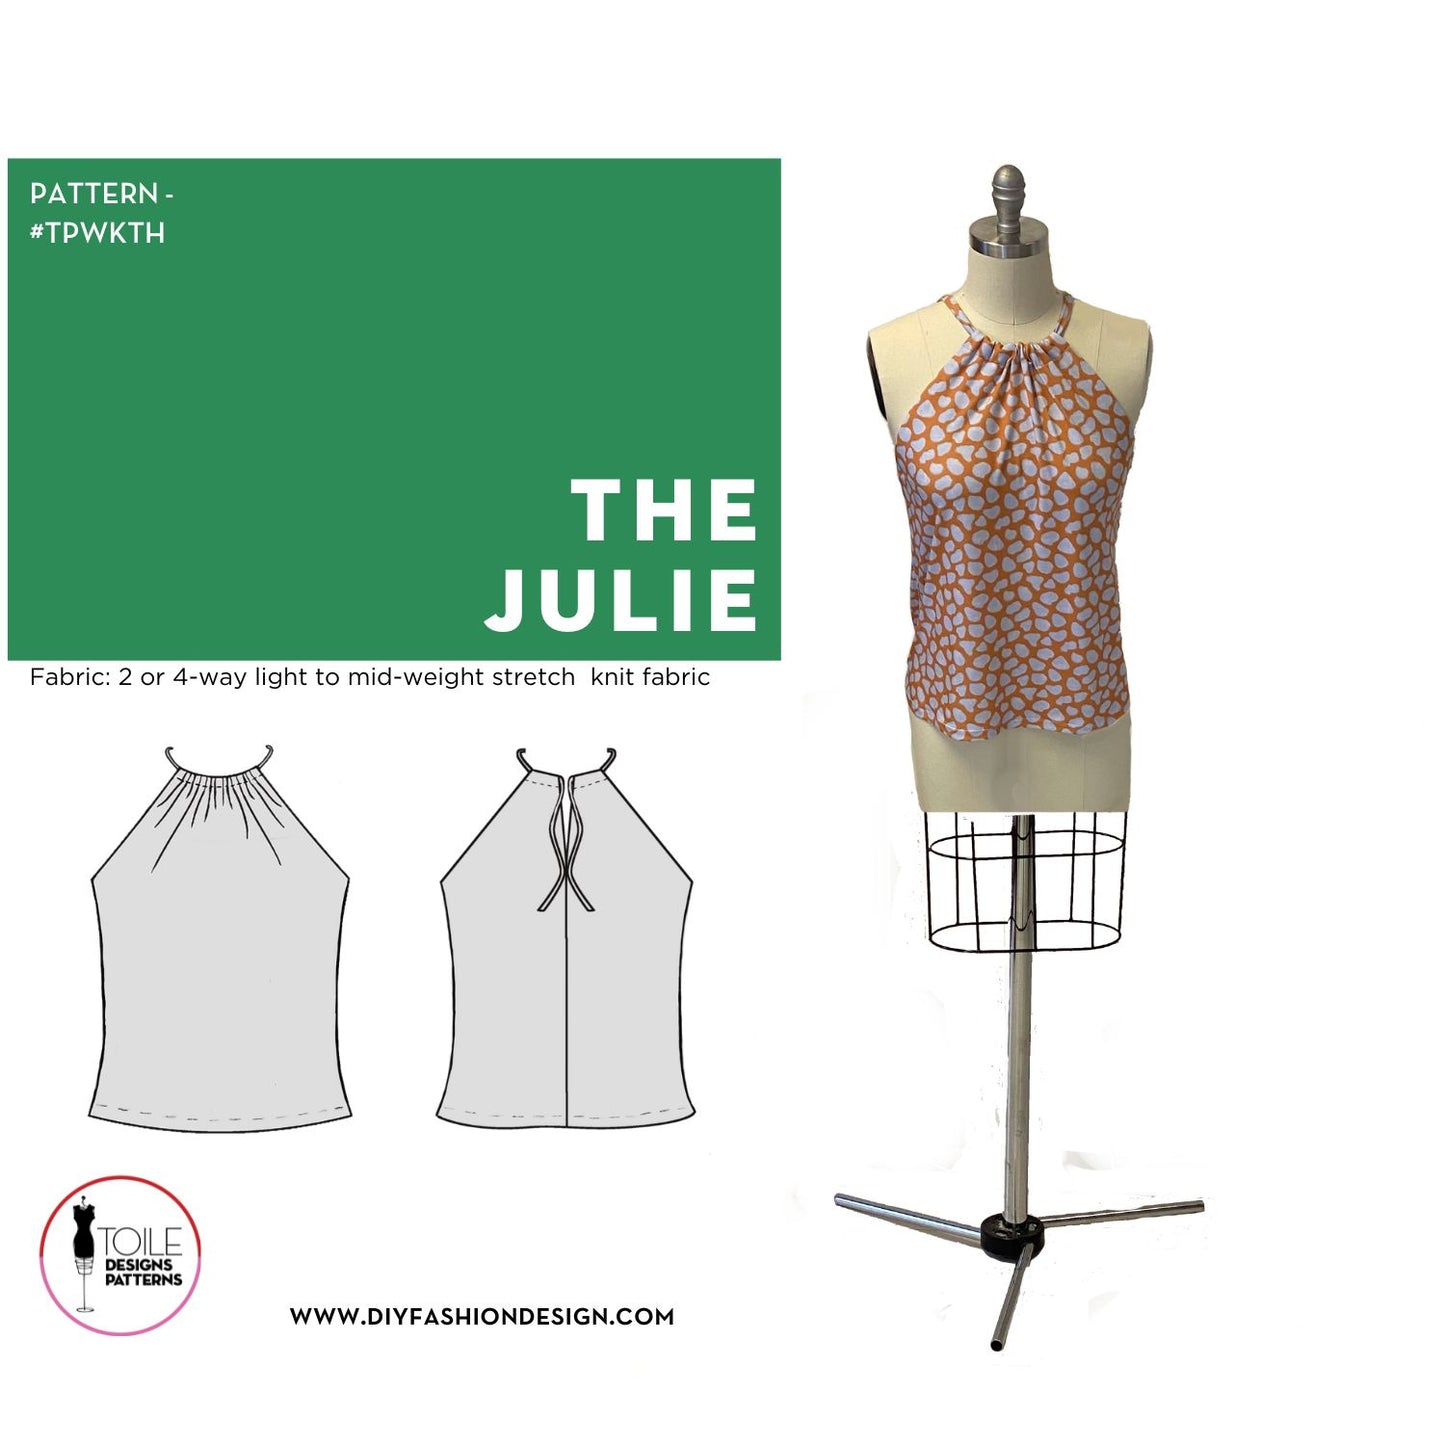 The Julie